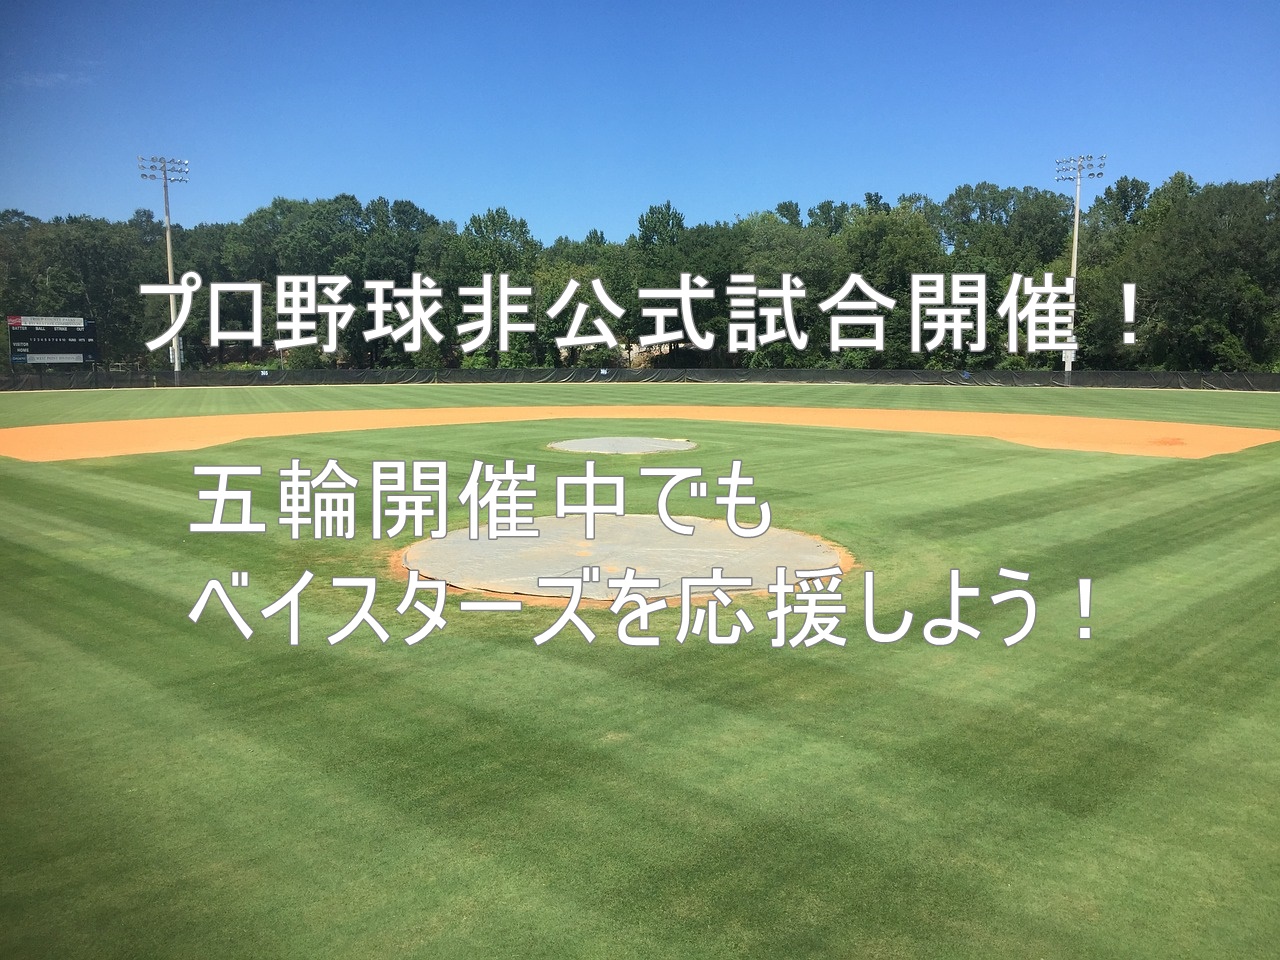 プロ野球非公式試合【交流戦】開催！五輪開催中でもベイスターズを応援しよう！